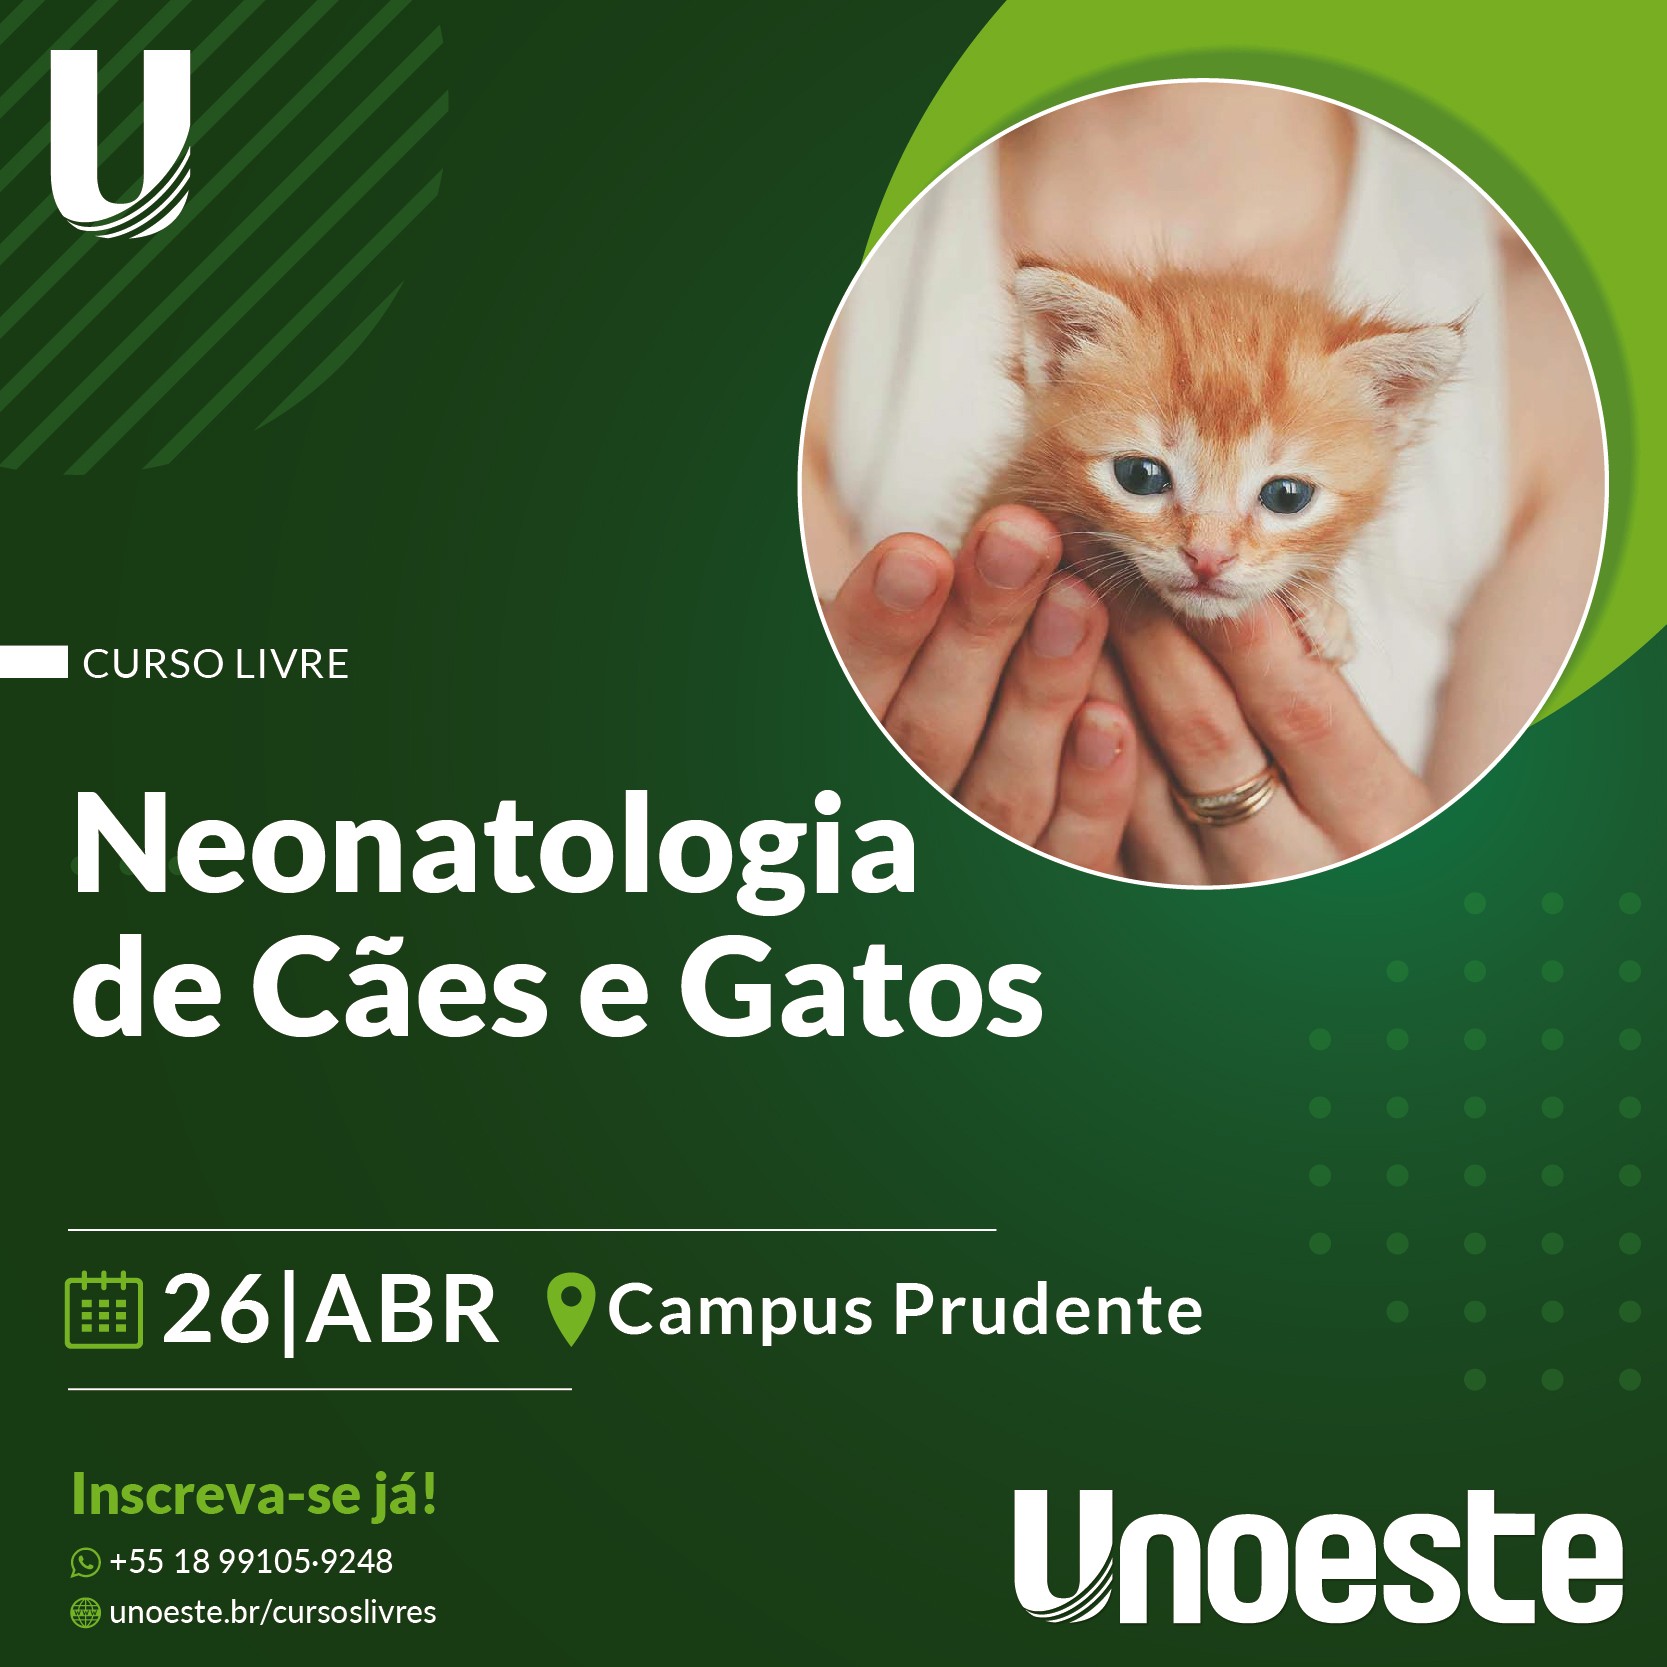 Curso de Neonatologia de Cães e Gatos                                                                                                                                                                                                                          